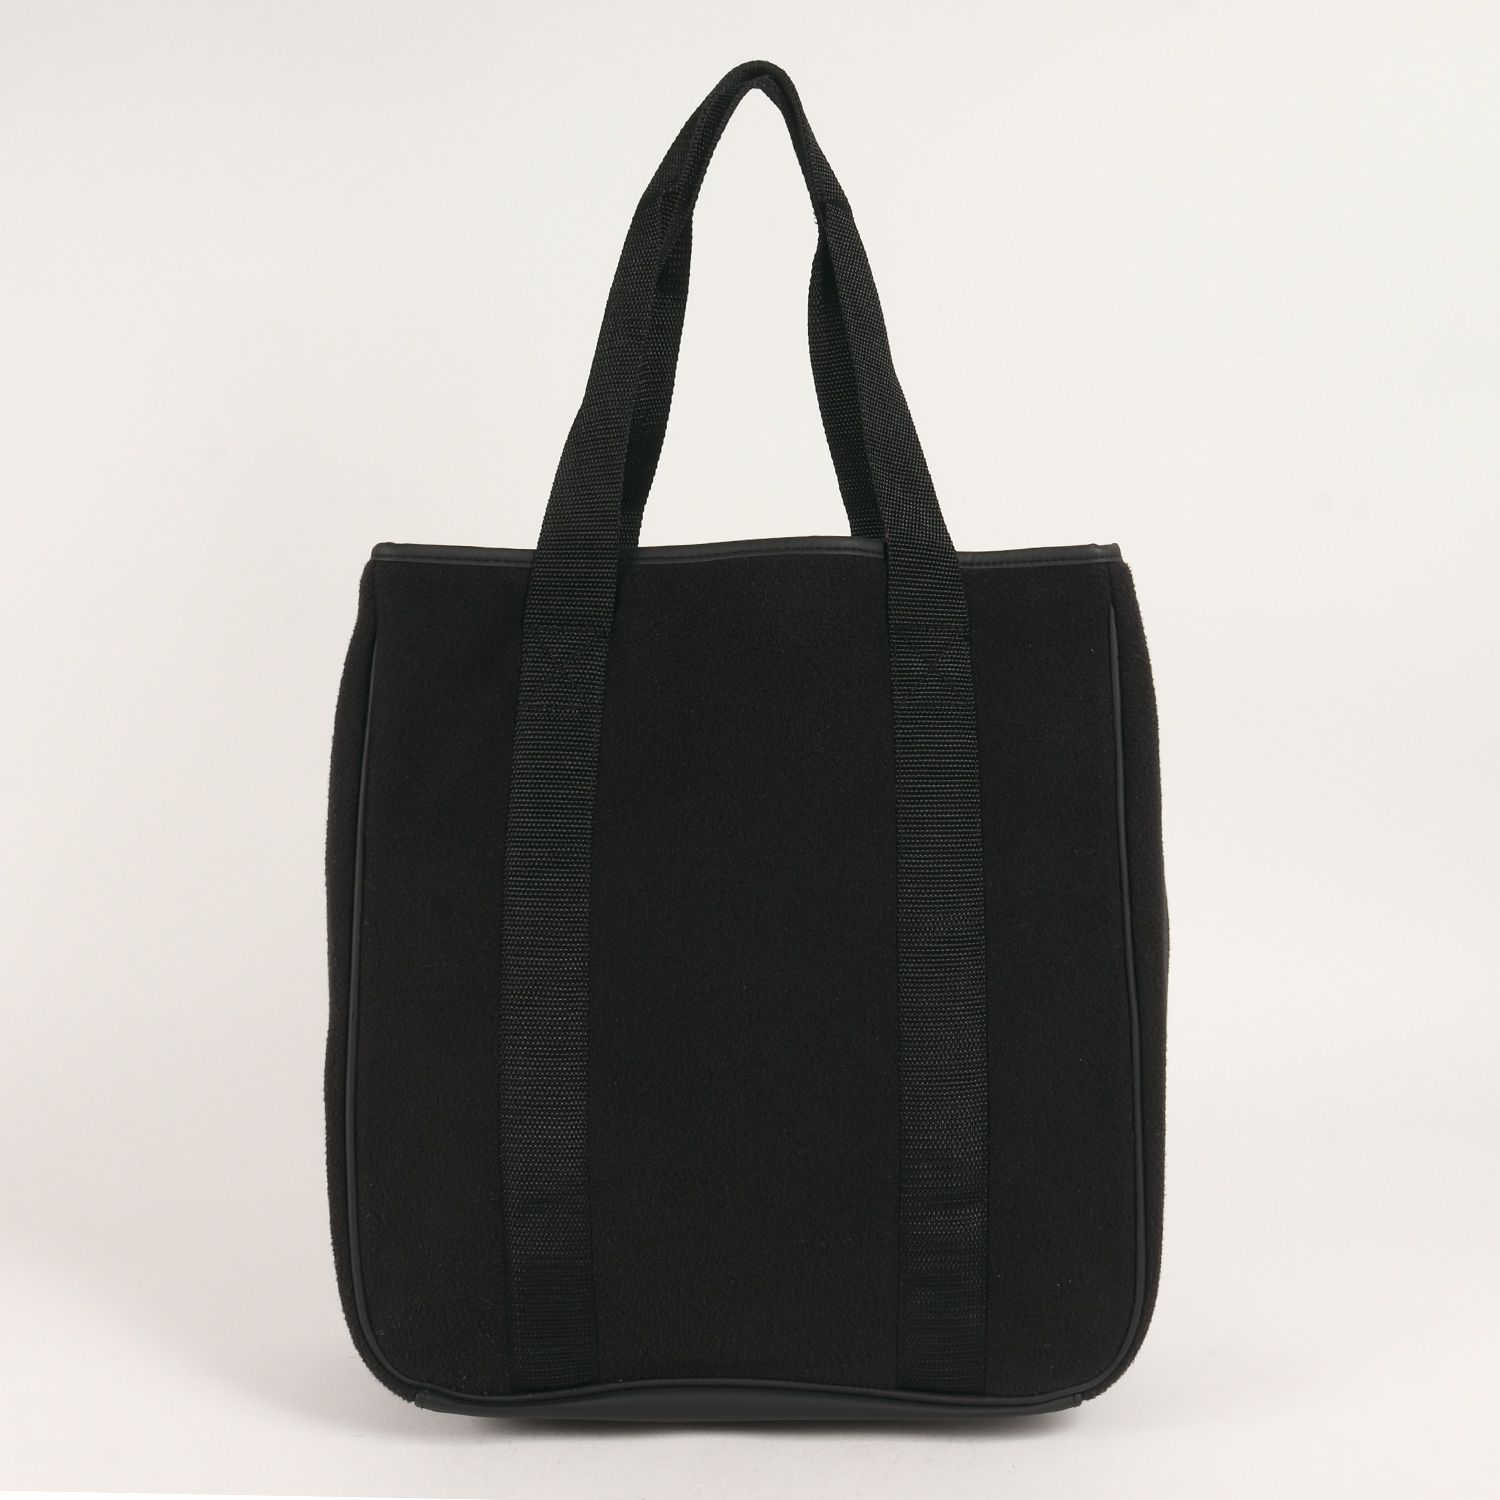 容量○素材○supreme Polartec tote bag black box logo - トートバッグ